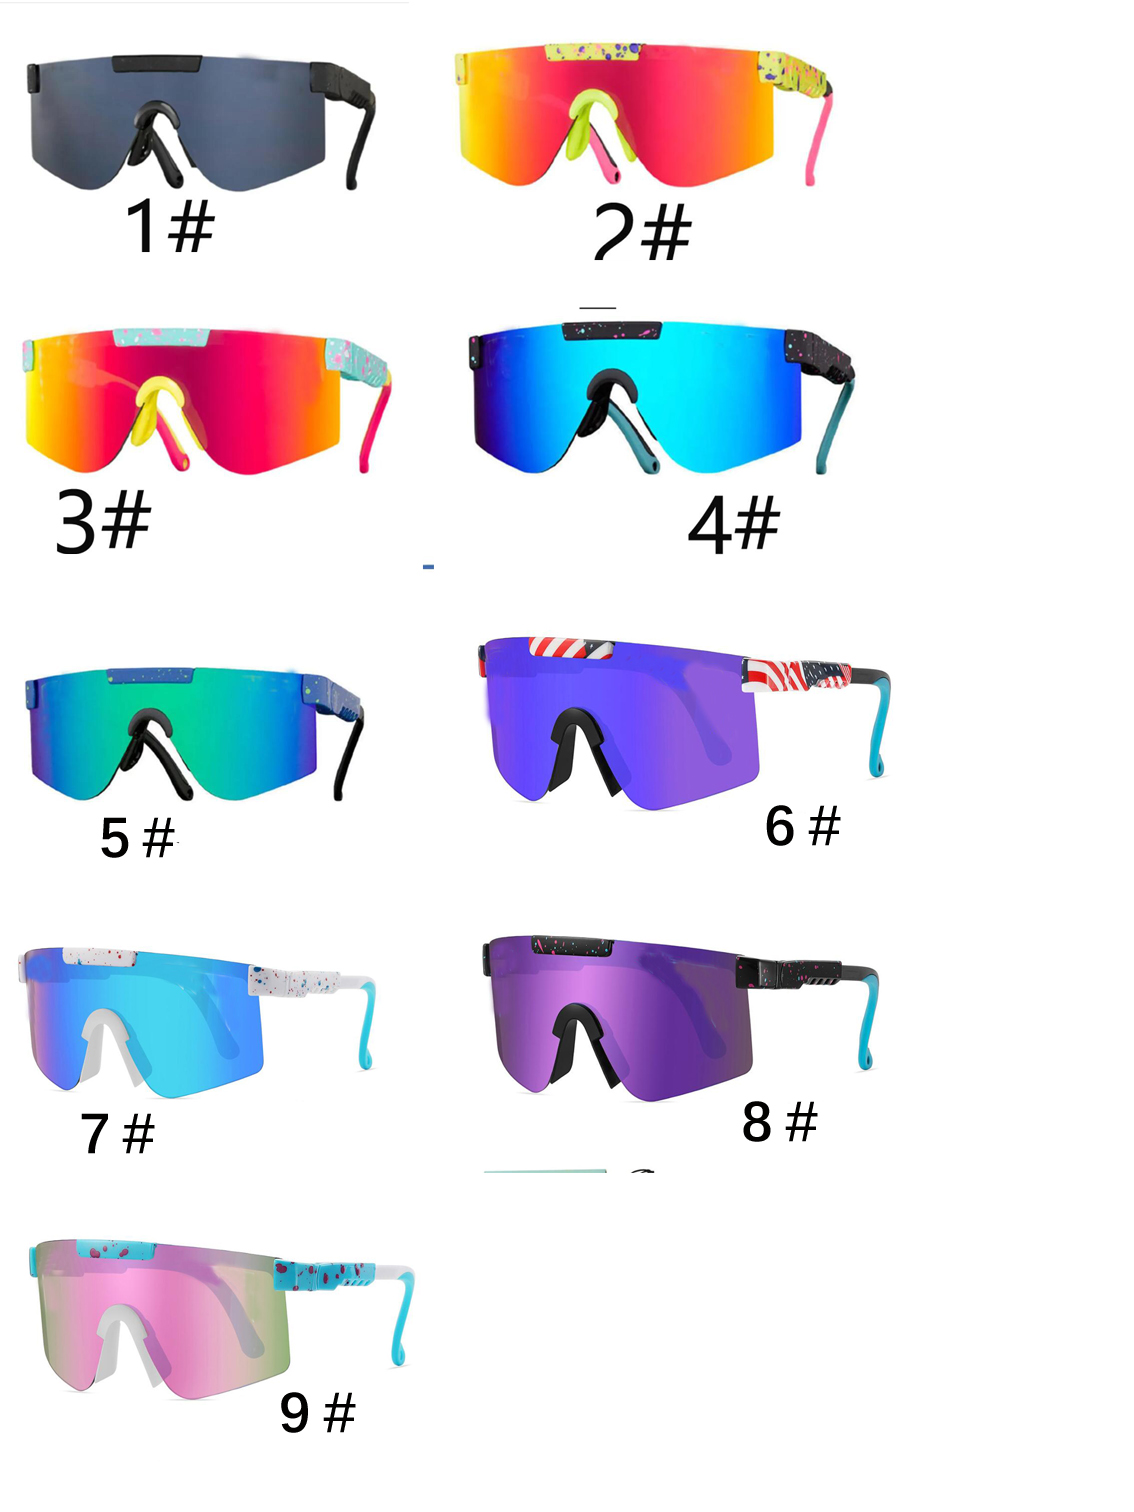 İlkbahar Yaz Boy Moda Güneş Gözlüğü Motosiklet Gözlük Kızları Dazzle Renk Bisiklet Sporları Açık Çocuk Rüzgar Polarize Gözlük Çanta Kutusu 9 Molors